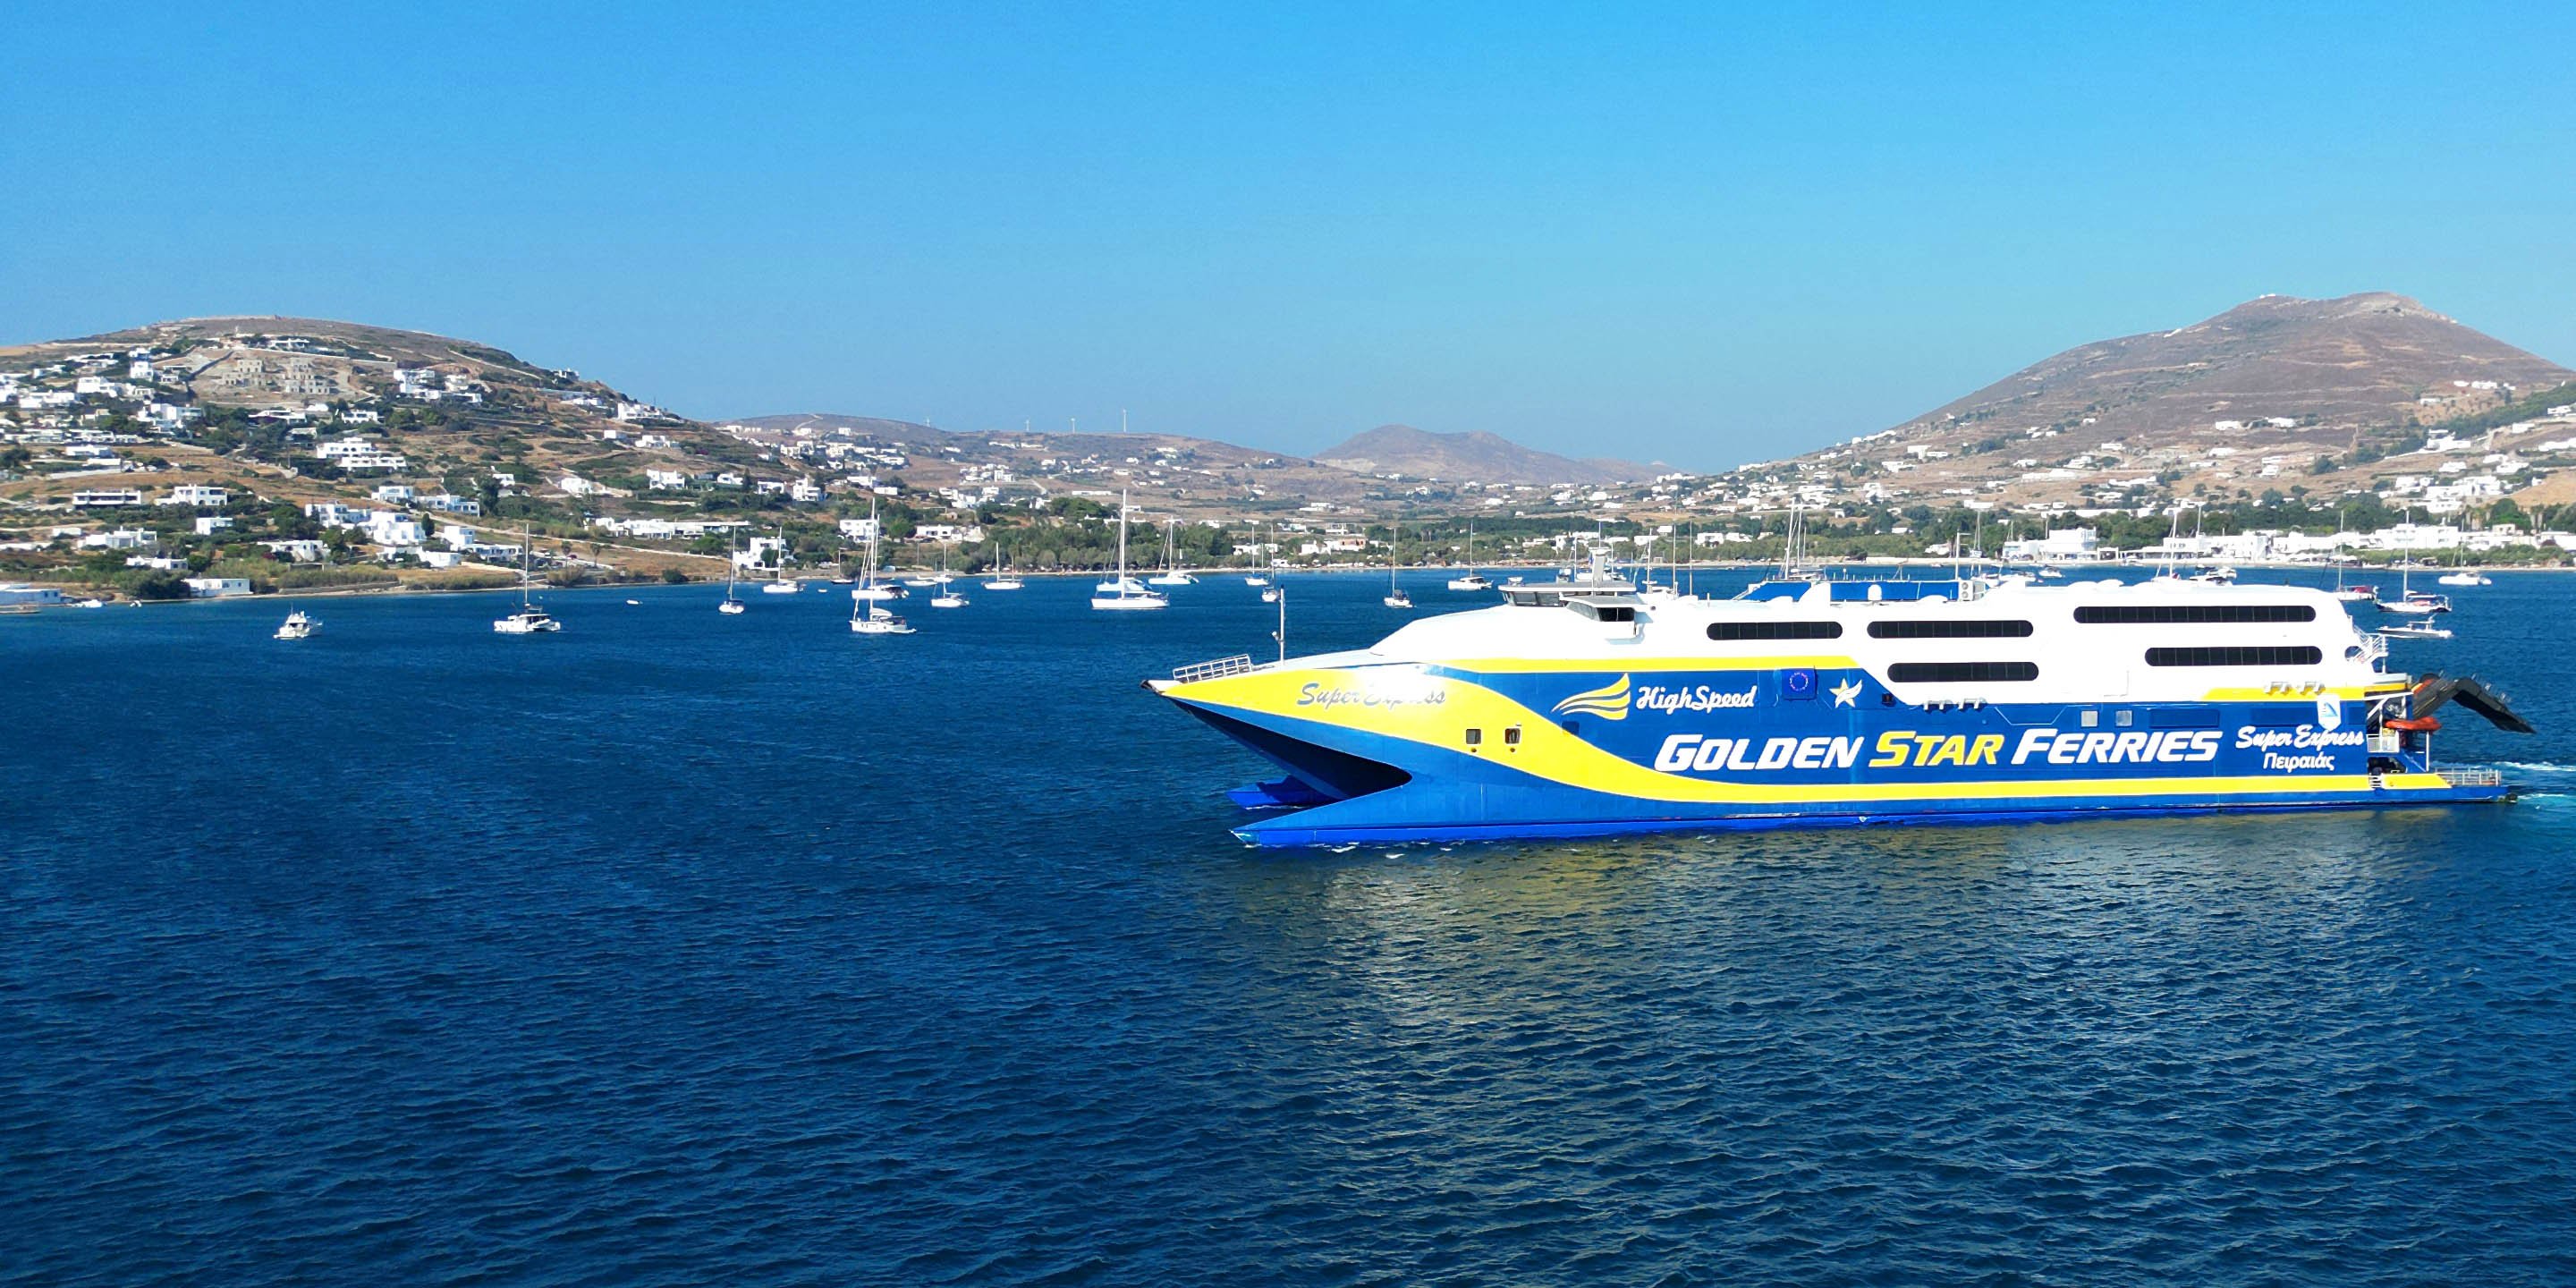 Il traghetto ad alta velocità SuperExpress di Golden Star Ferries che effettua la rotta tra Paros e Mykonos